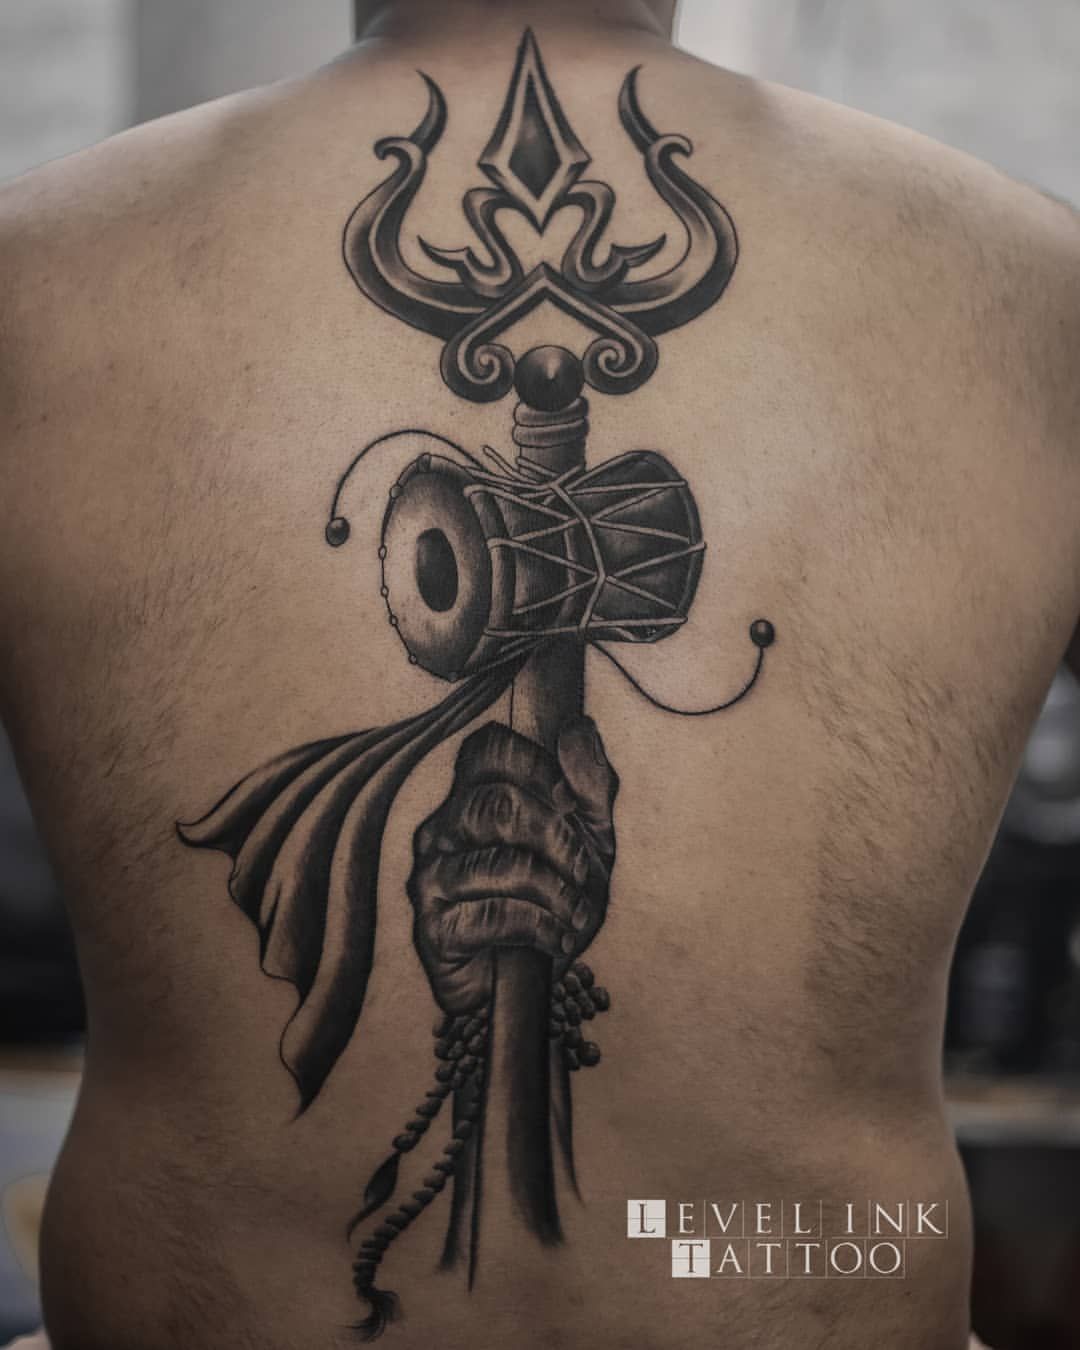 Another full back Lord shiva tattoo @girishhankar | @alienzkid  #fullbacktattoo #tattoo #alienzkidtattoo #tattooartist #kochitattooarti...  | Instagram